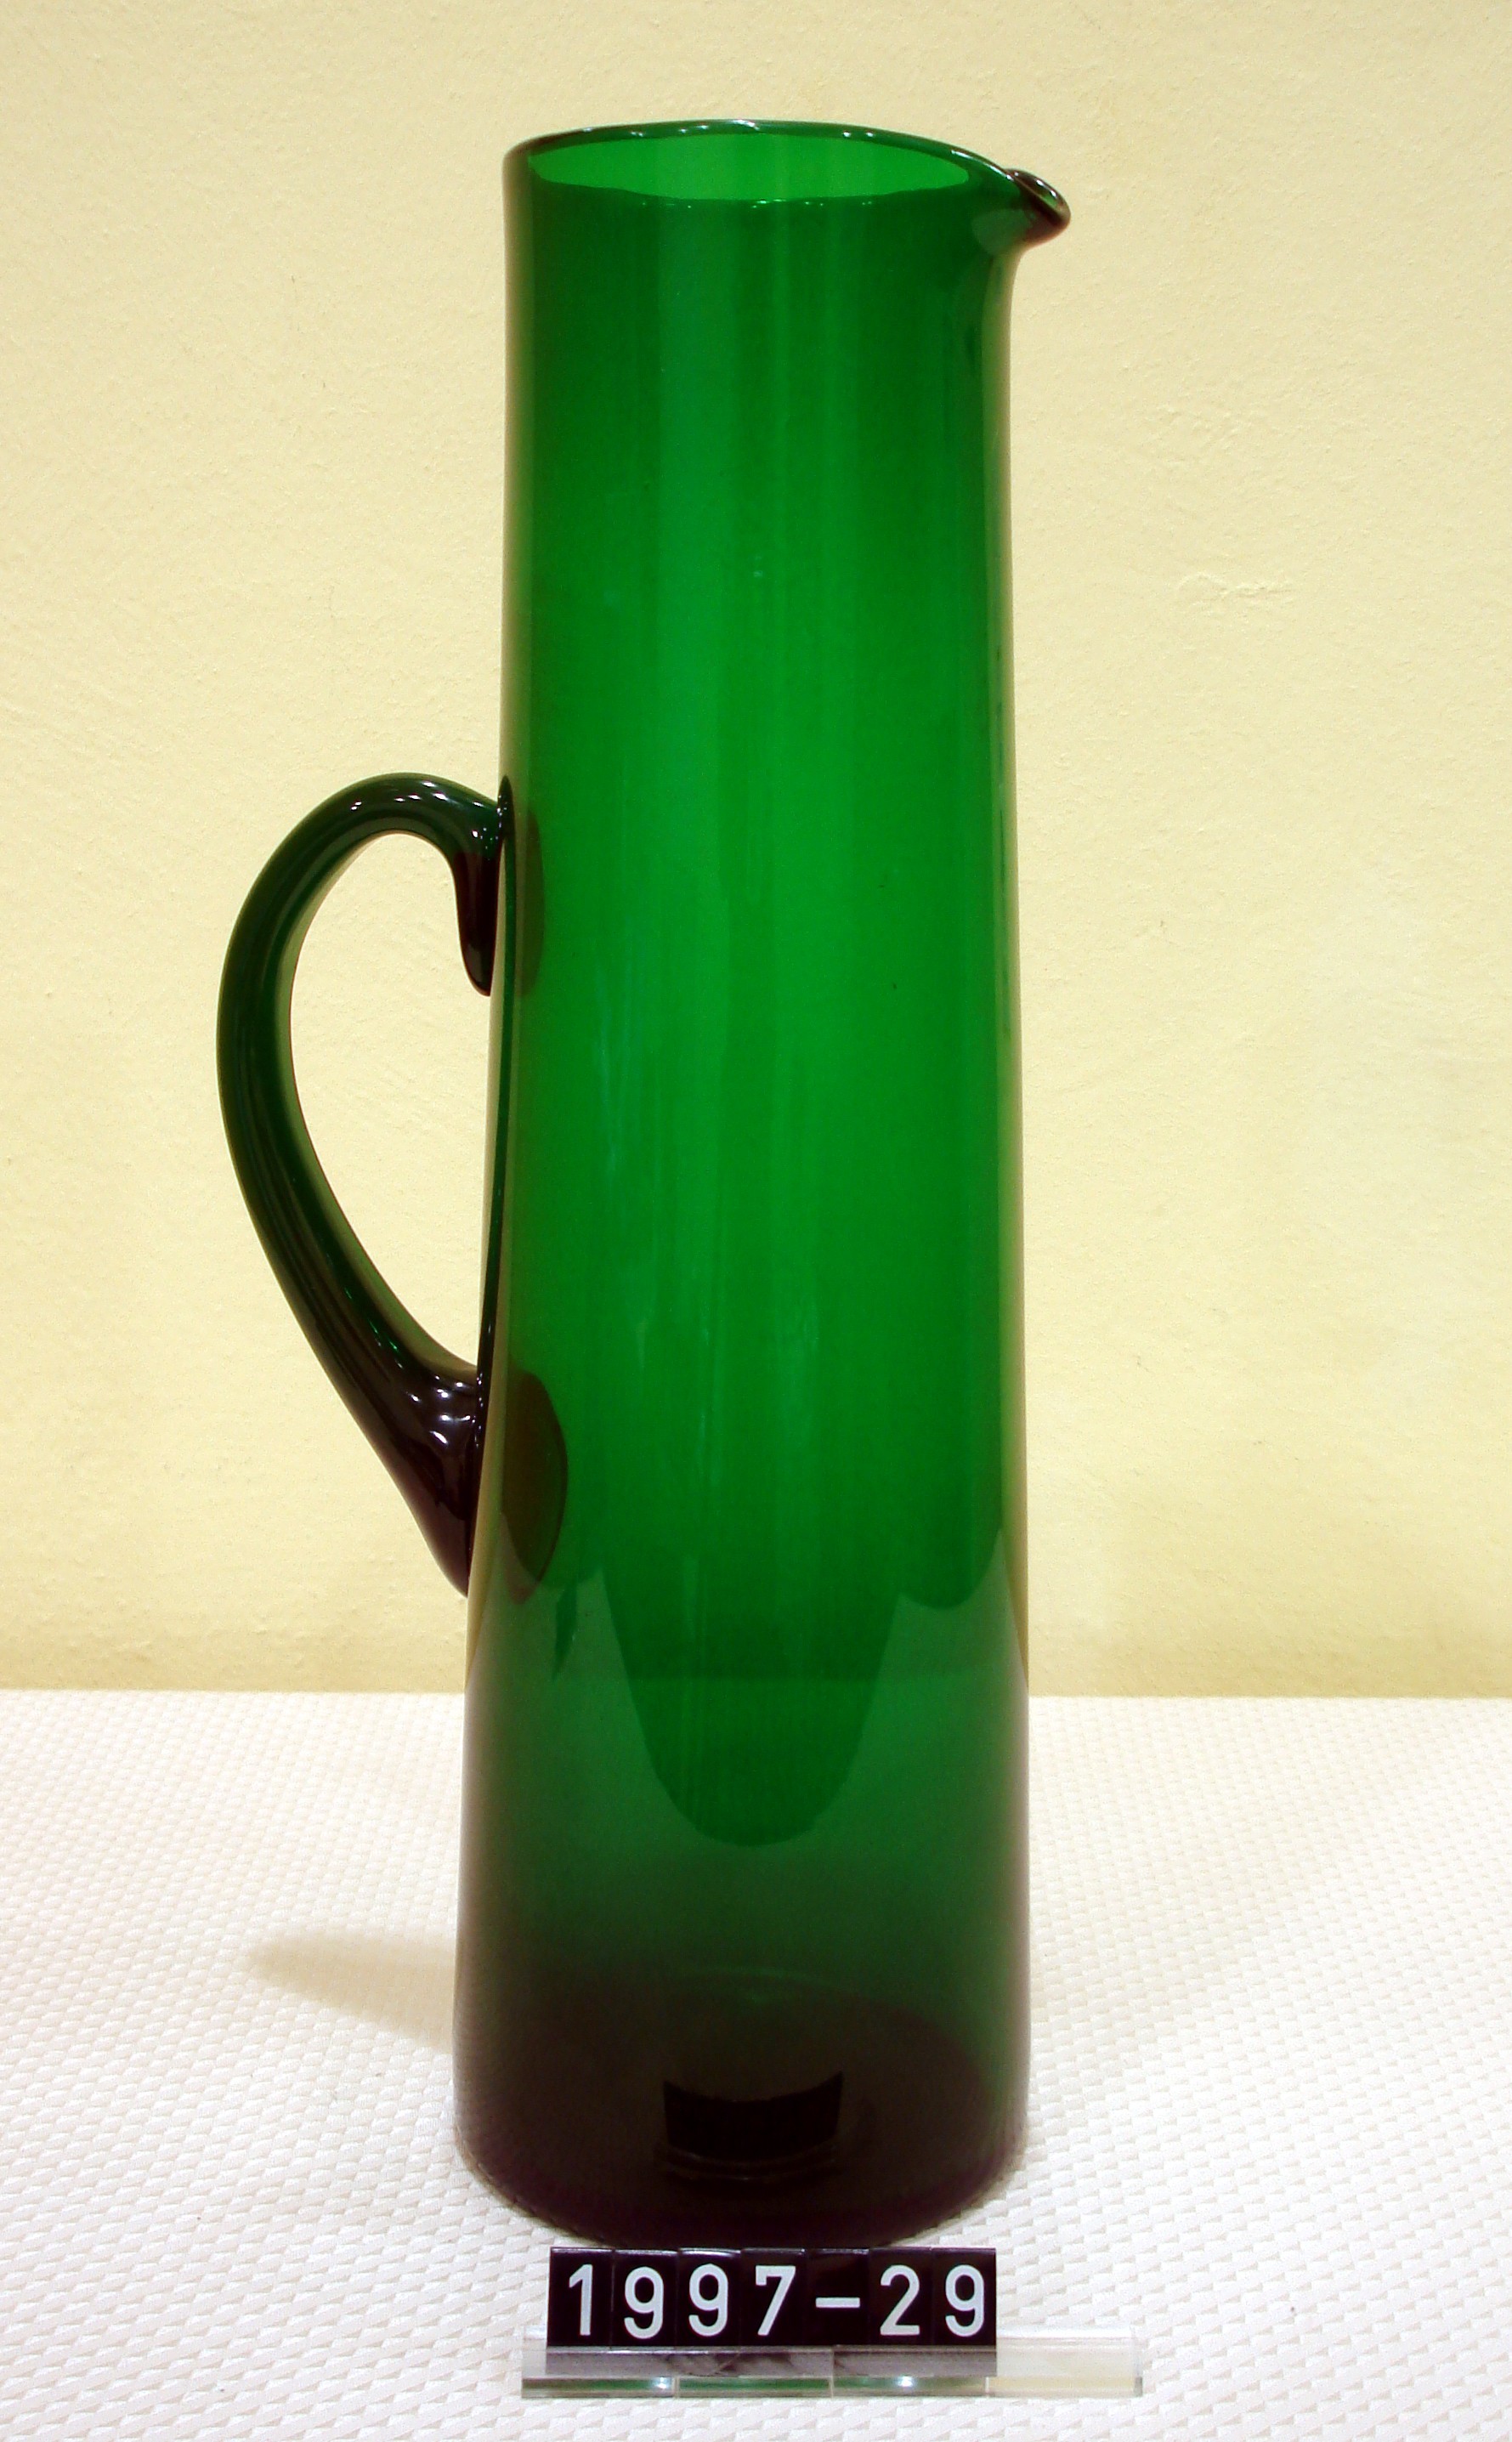 Krug; Karaffe aus grünem Glas mit Henkel; 1. Hälfte 19. Jh. (Stadtmuseum Bad Dürkheim, Museumsgesellschaft Bad Dürkheim e.V. CC BY-NC-SA)